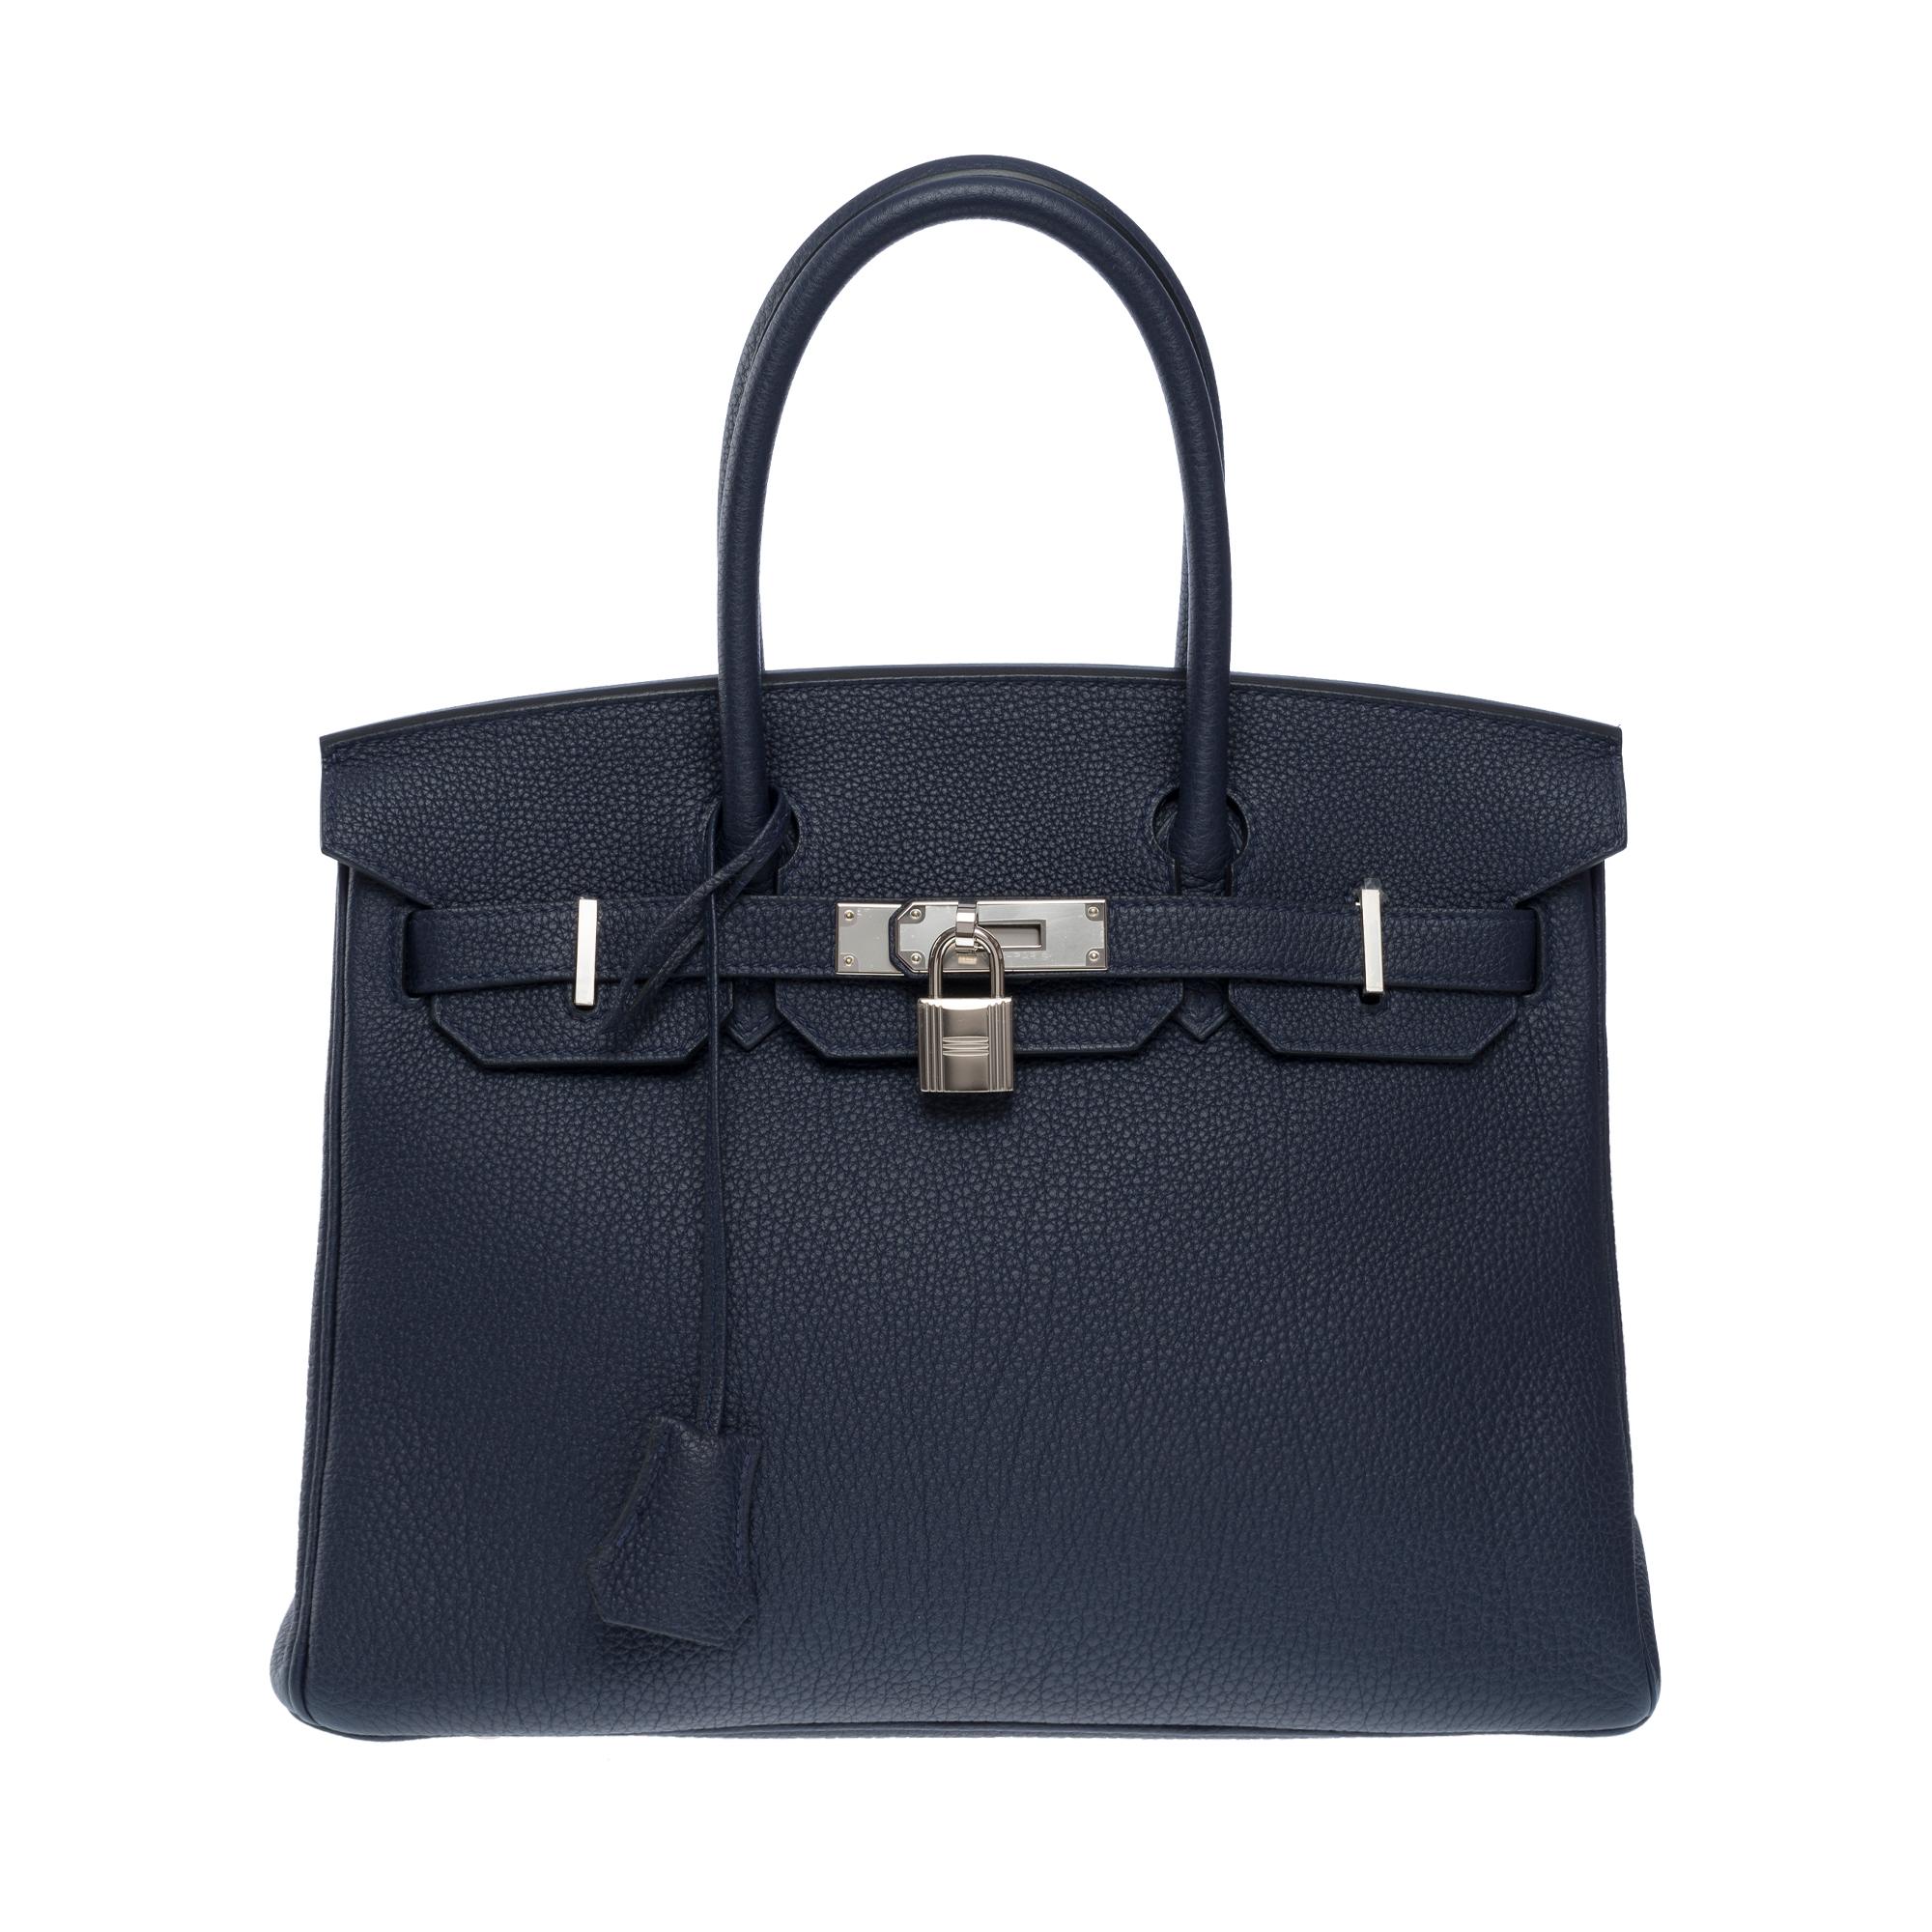 Orange Hermes Birkin 30 handbag in Bleu nuit Togo leather, SHW For Sale